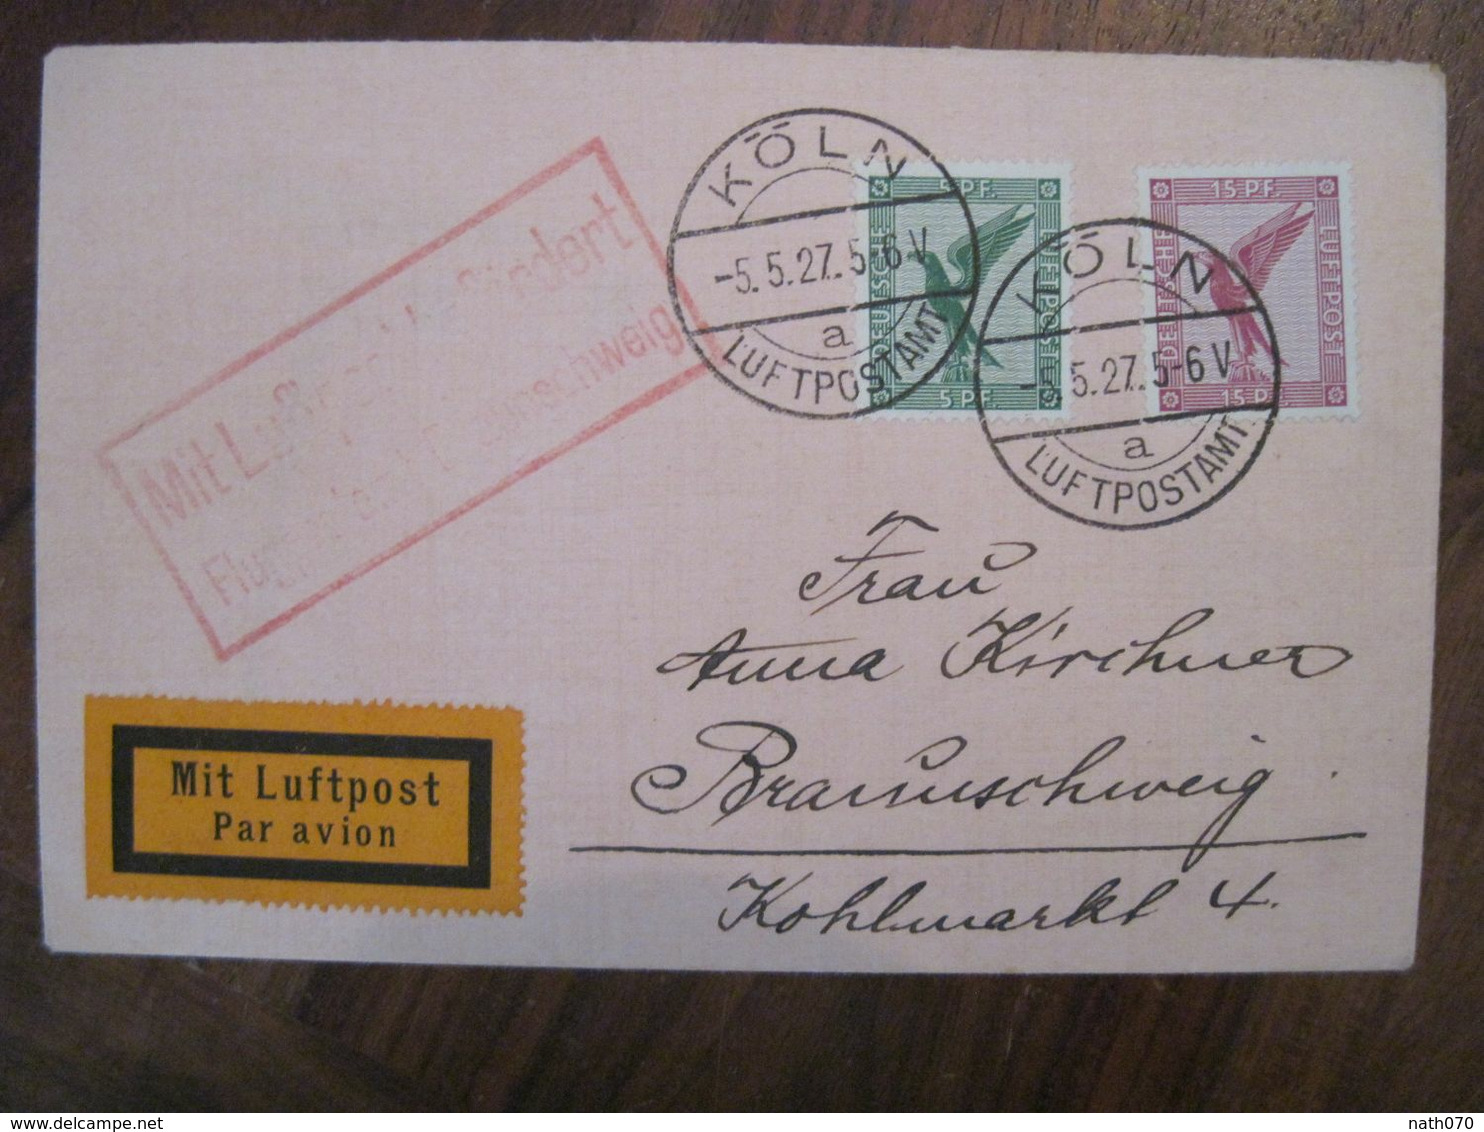 1927 Flugpost Mit Luftpost Air Mail Poste Aerienne Cover Deutsches Reich DR Germany Allemagne Luftpostamt - Lettres & Documents